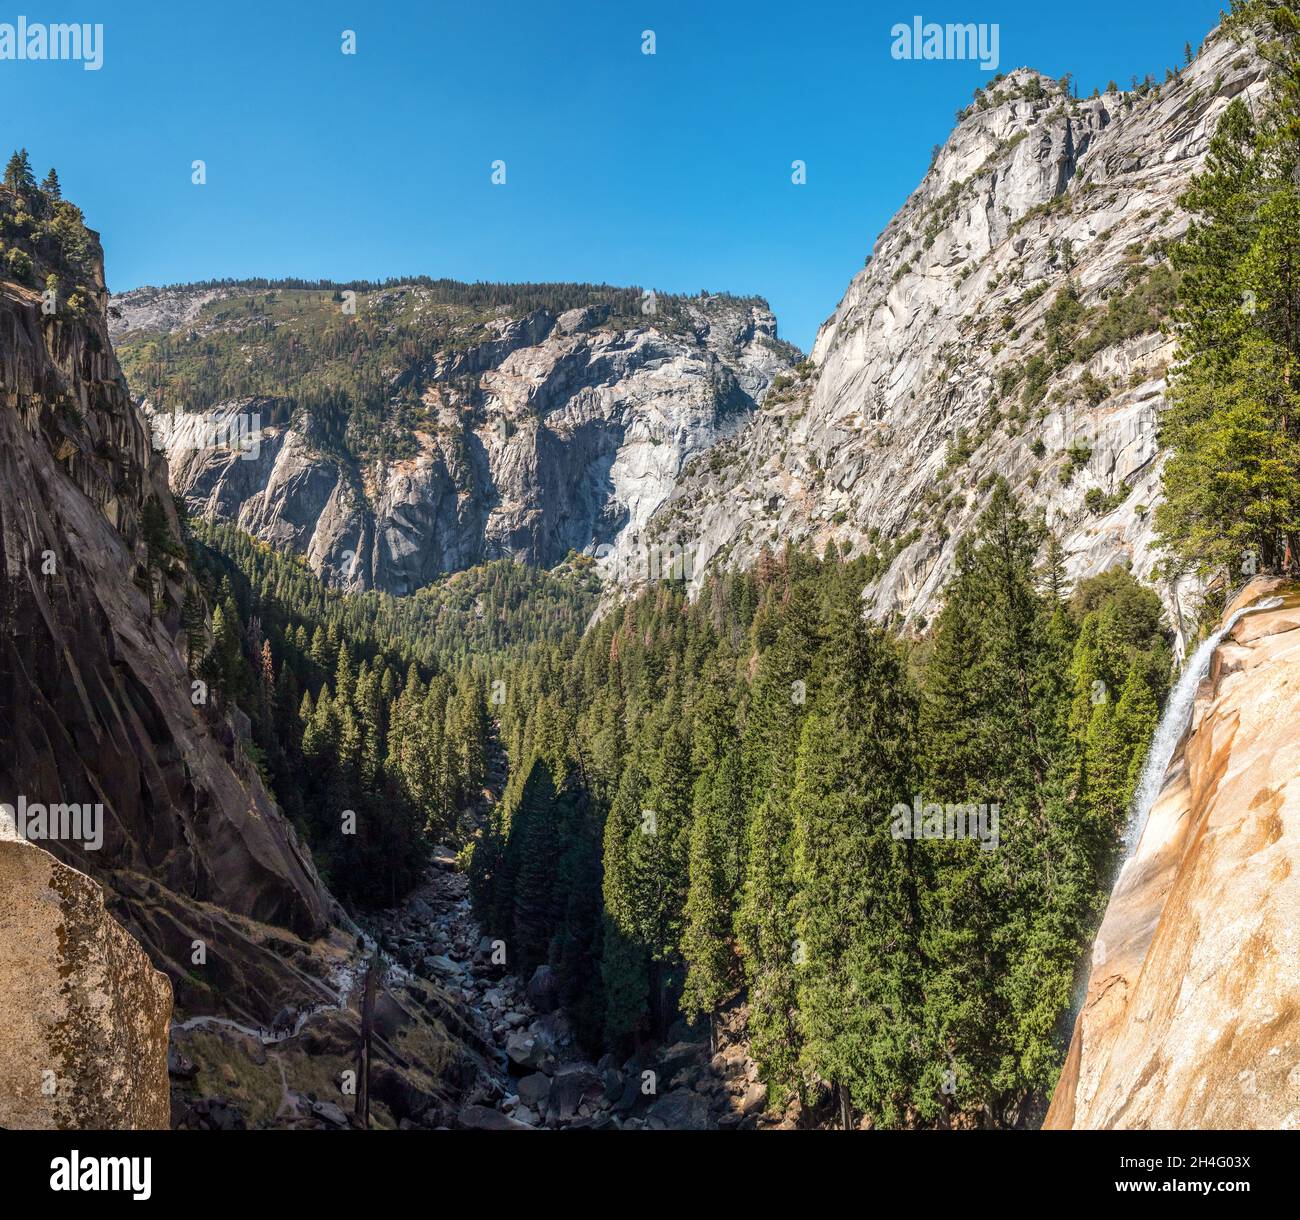 Paysage alpin du parc national de Yosemite, États-Unis Banque D'Images